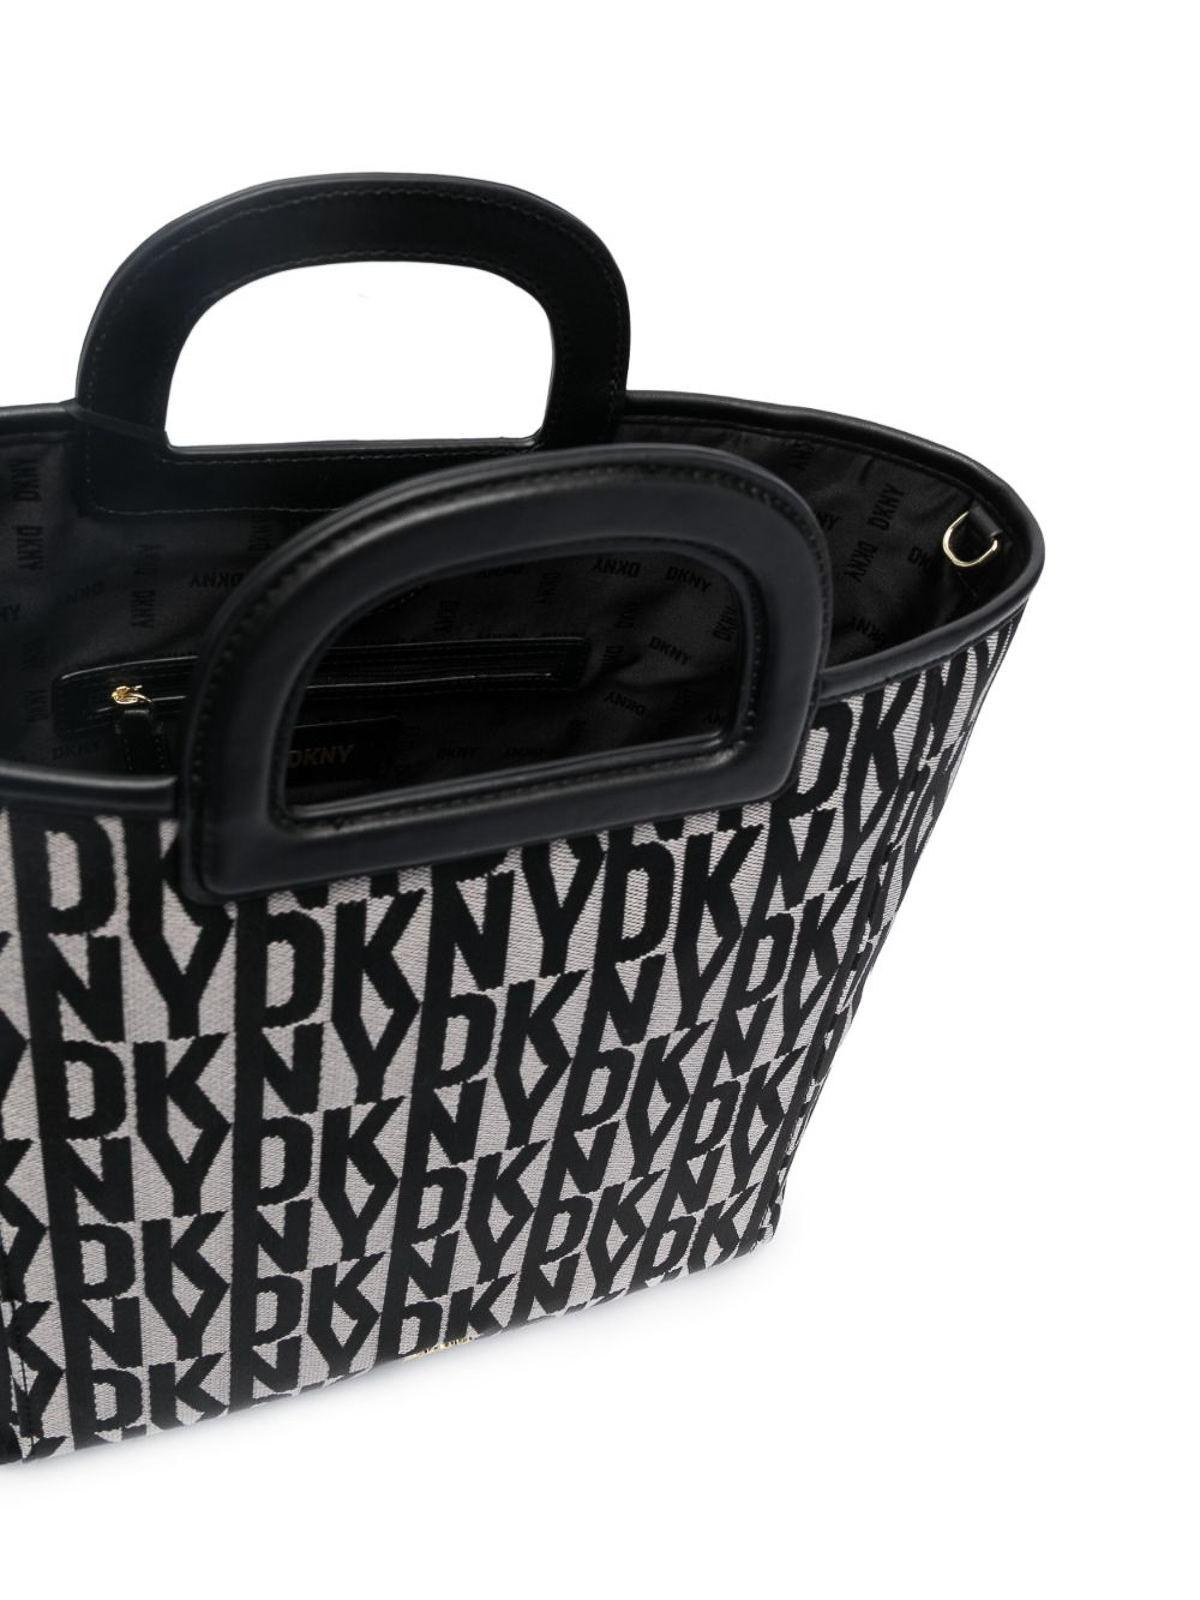 DKNY Monogram-jacquard Leather Tote Bag in Black